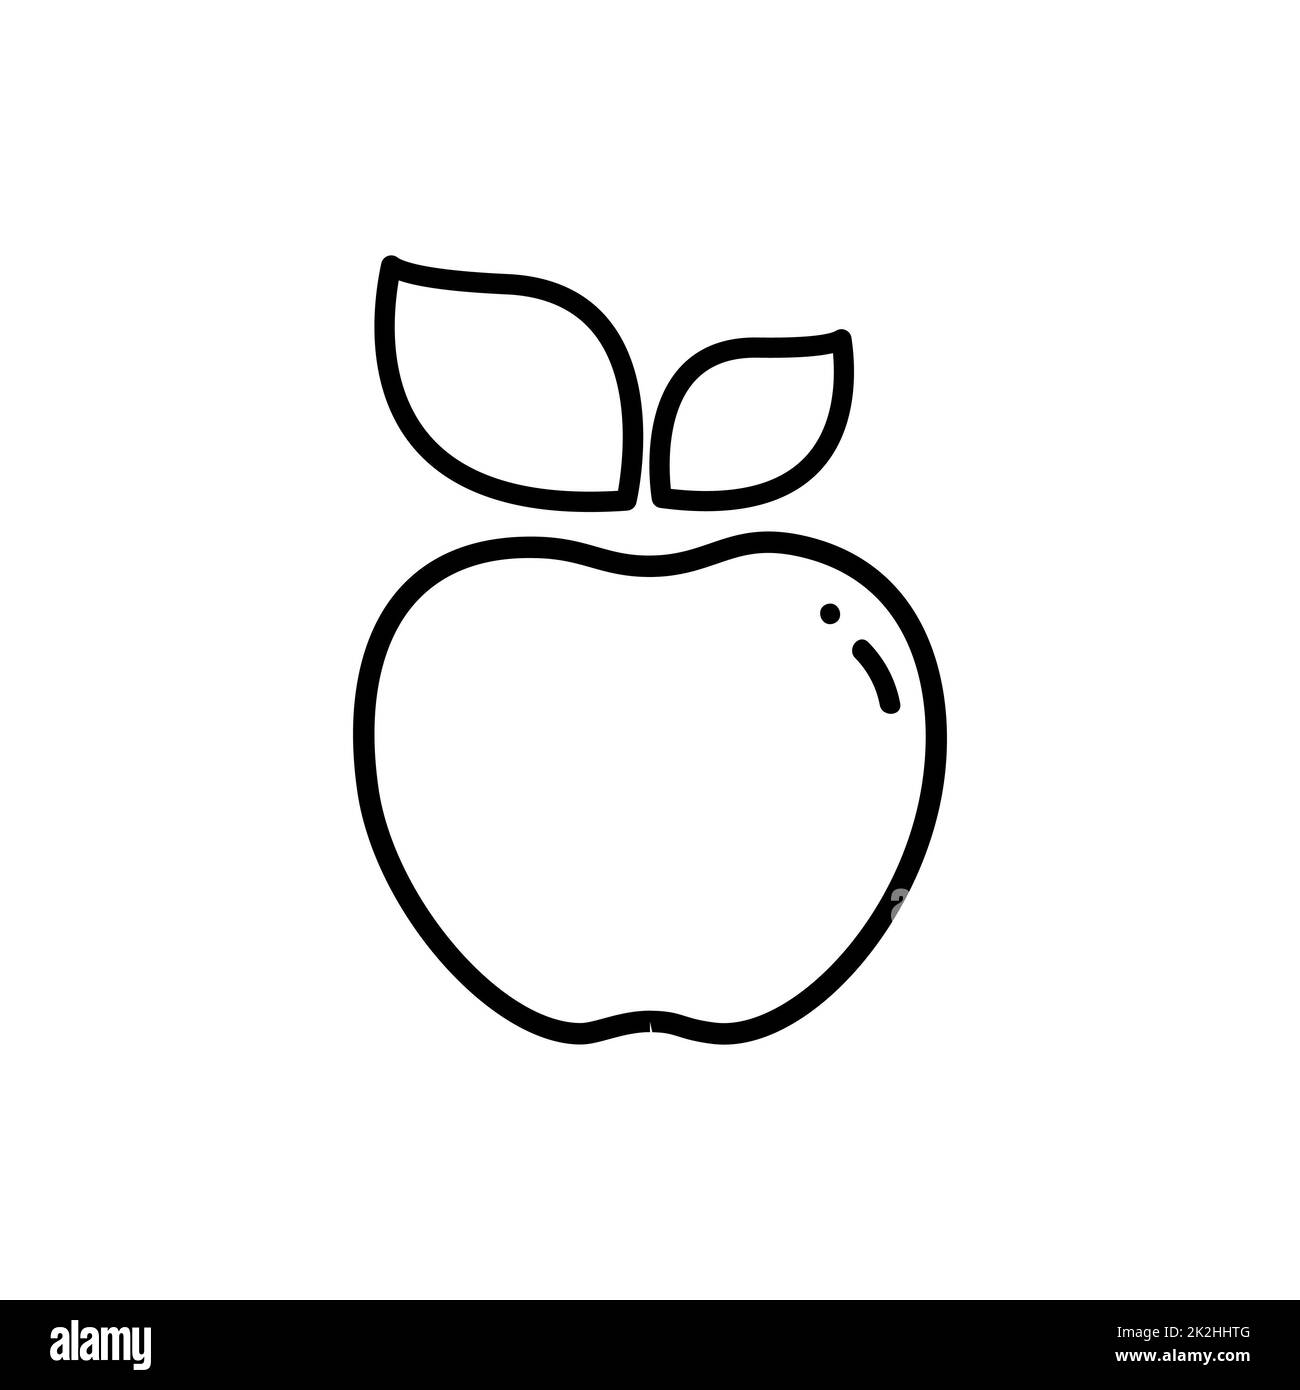 Icona di linea sottile Apple su sfondo bianco - vettore Foto Stock